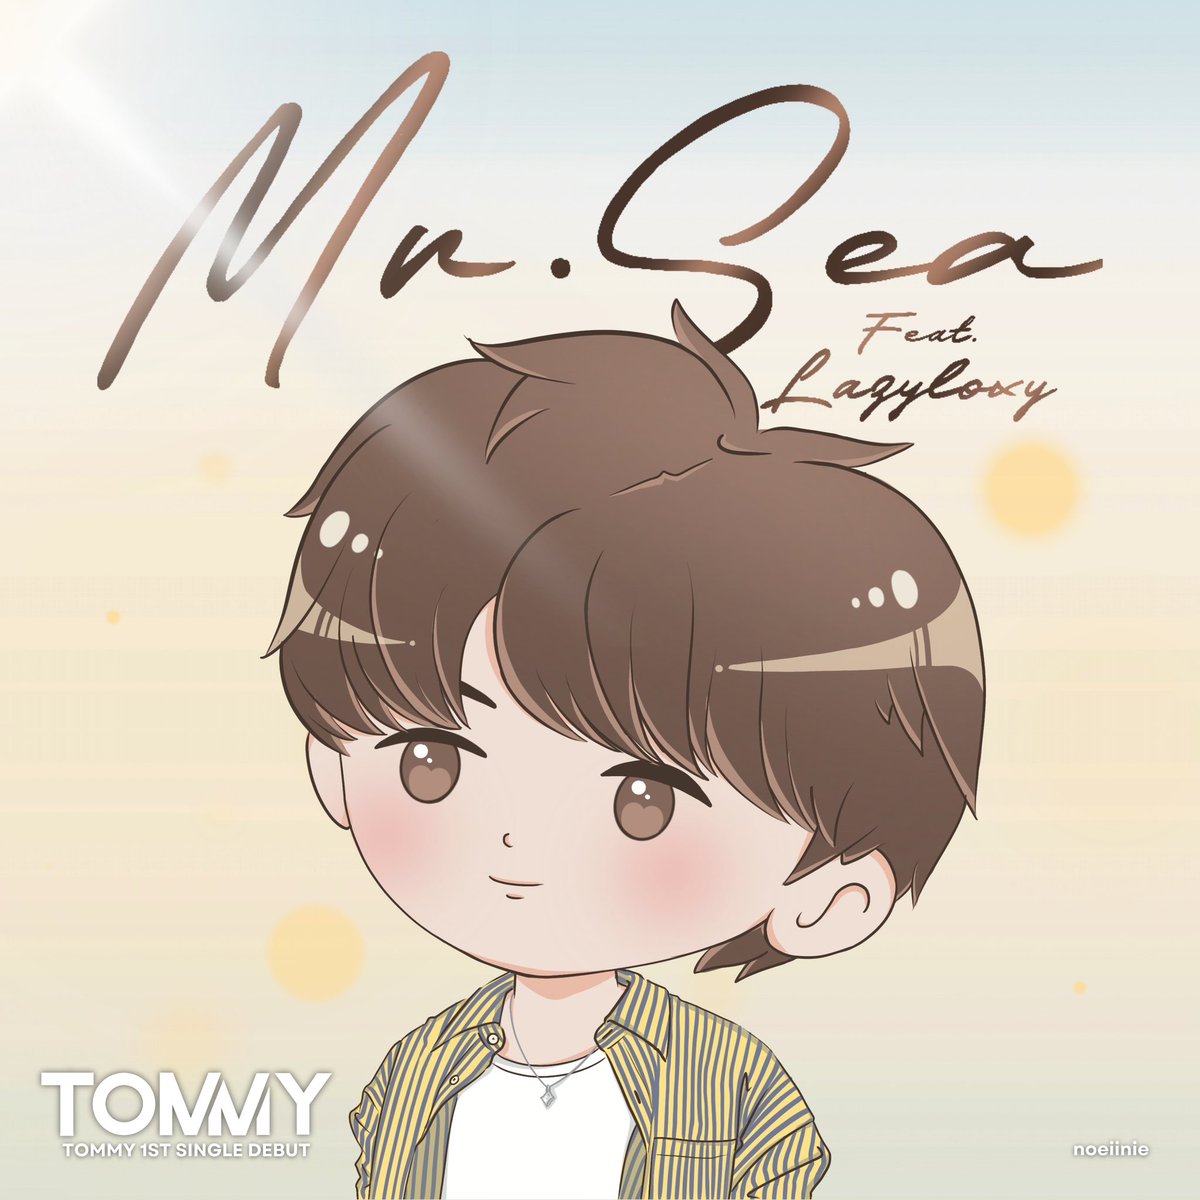 MR.Sea ☀️🌊

#MrSeaByTommy
#TOMMY1stSingleDebut
#MRSEA 
#tommysittichok #StarMee
@tommysittichok